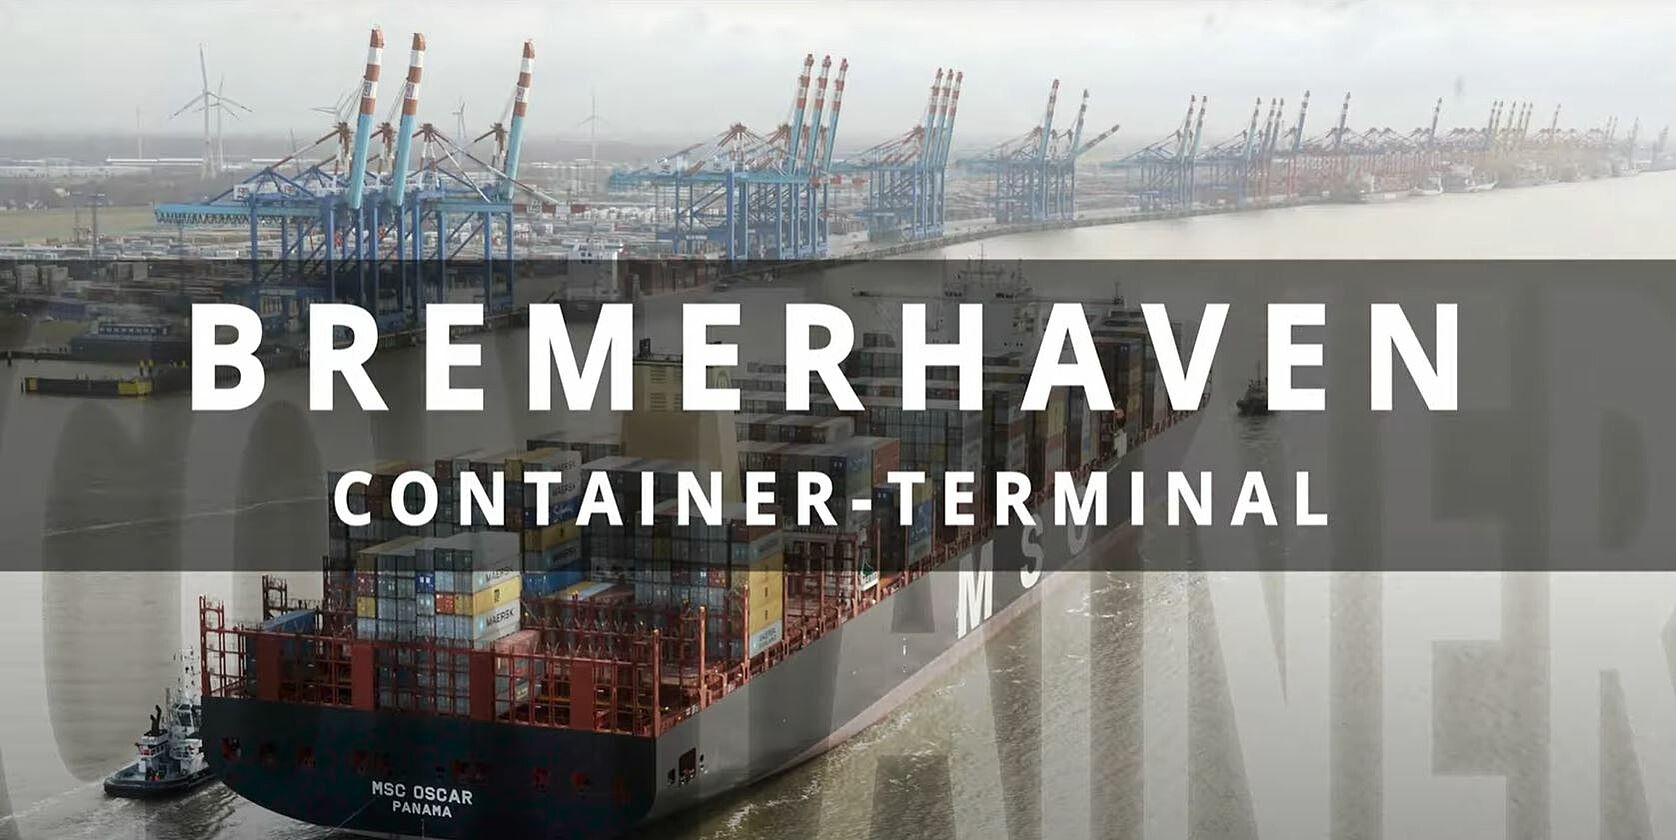 Blick aufs Containerterminal. Insert: Weiße Schrift auf grauem Grund: Bremerhaven: Container-Terminal